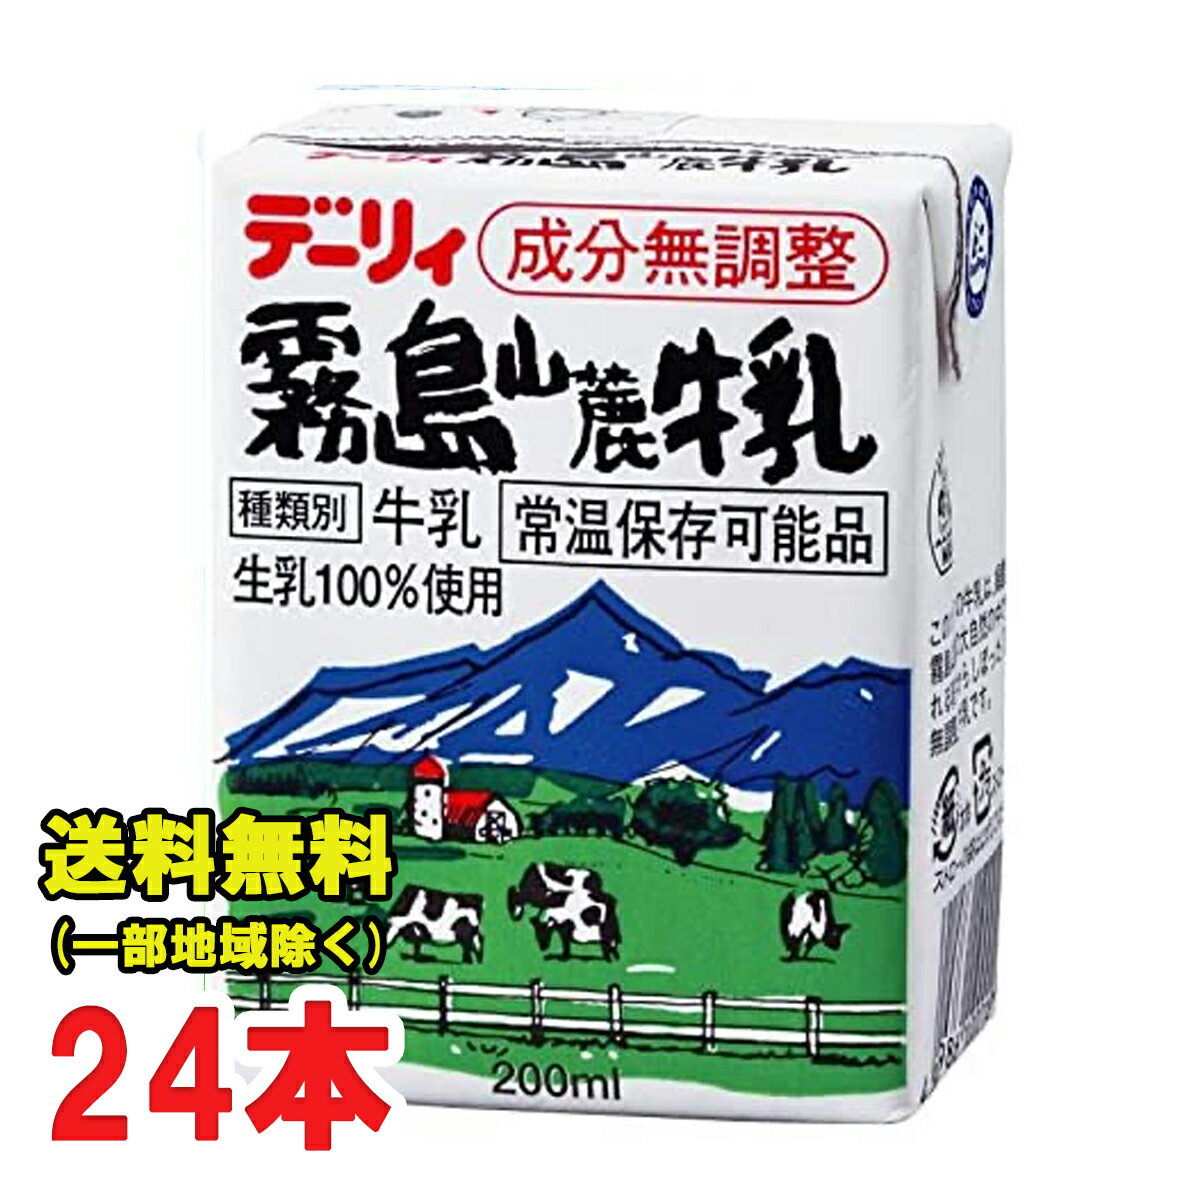 南日本酪農協同『デーリィ 霧島山麓牛乳 200ml』